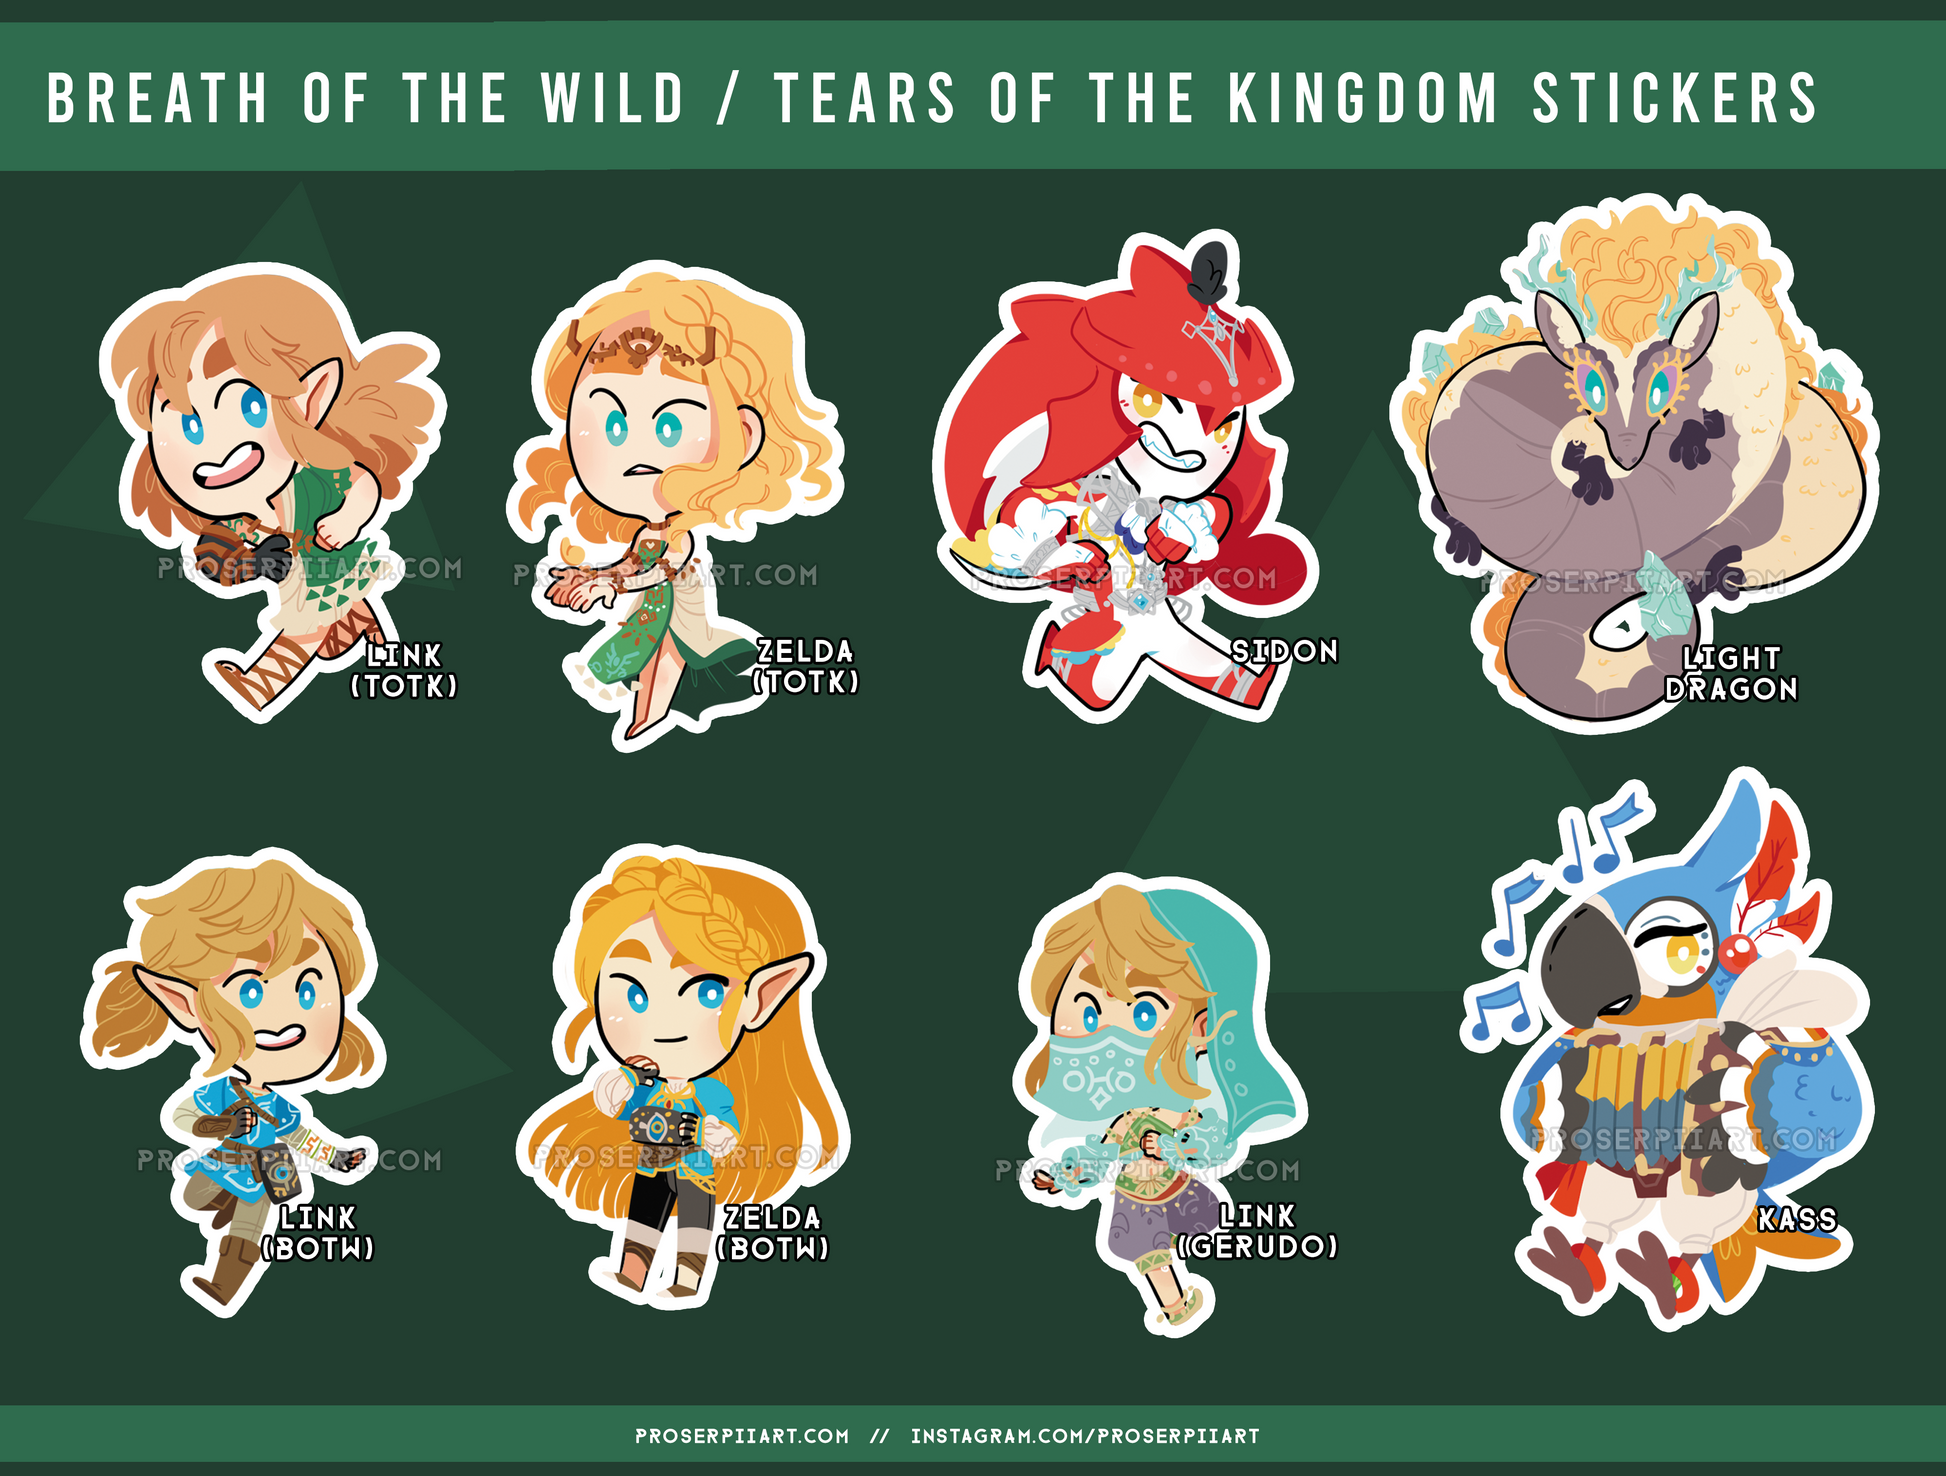 Legend of Zelda Sticker Link TOTK BOTW Anime Sticker for Laptop